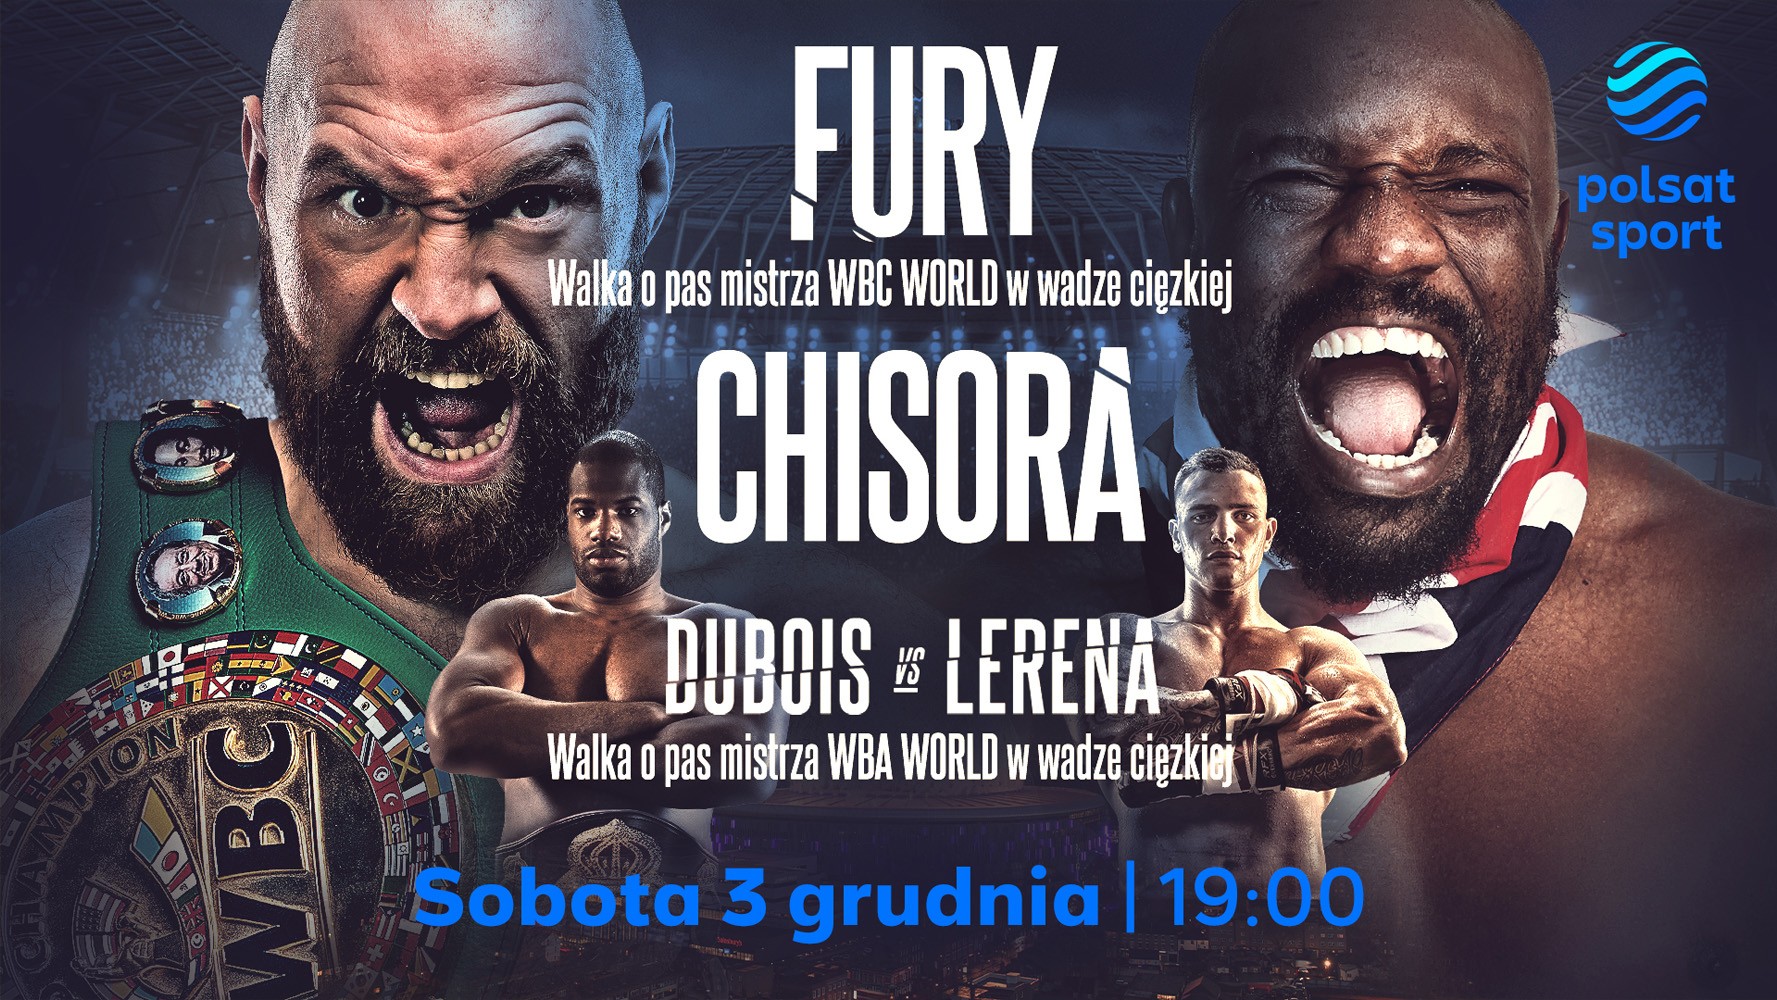 Tyson Fury vs. Dereck Chisora w sobotę 3 grudnia w Polsat Sport